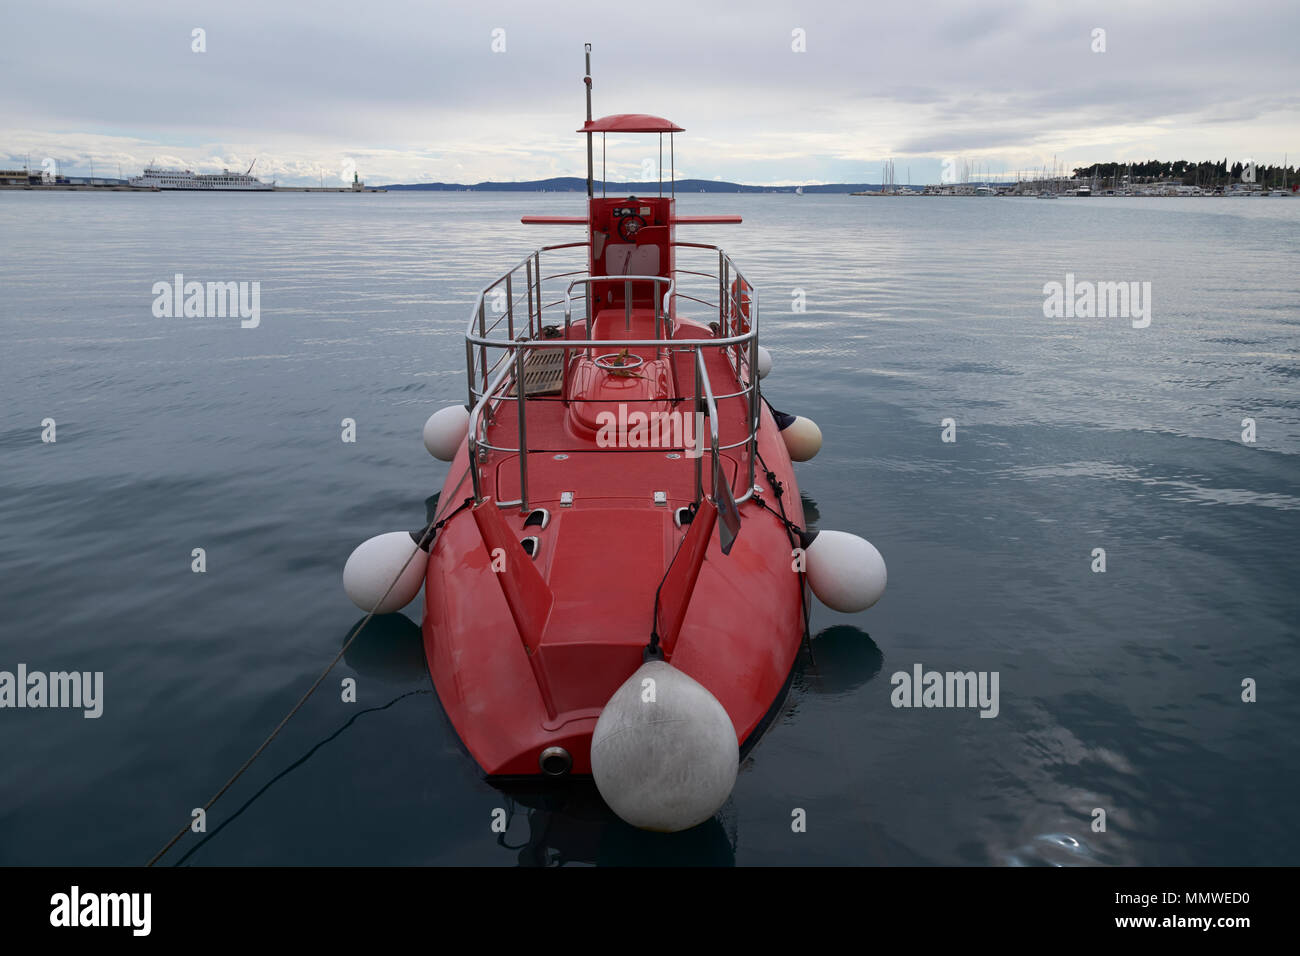 A submarine used for tourist pleasure trips moored at Split, Dalmatia, Croatia. Stock Photo